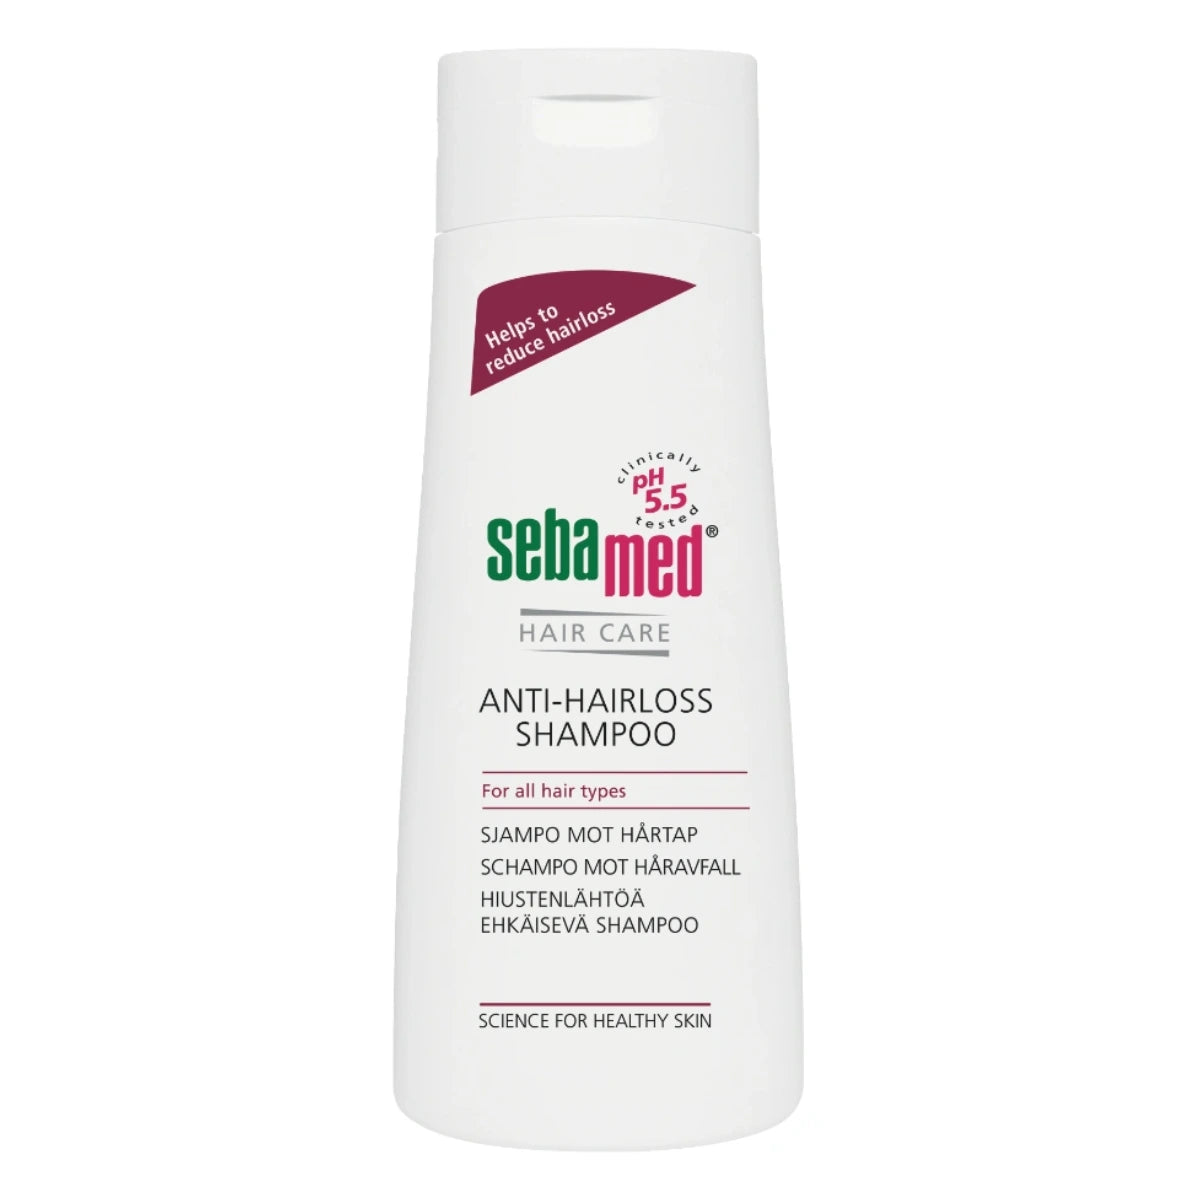 SEBAMED Anti-Hairloss shampoo 200 ml hiustenlähtöä ehkäisevä shampoo